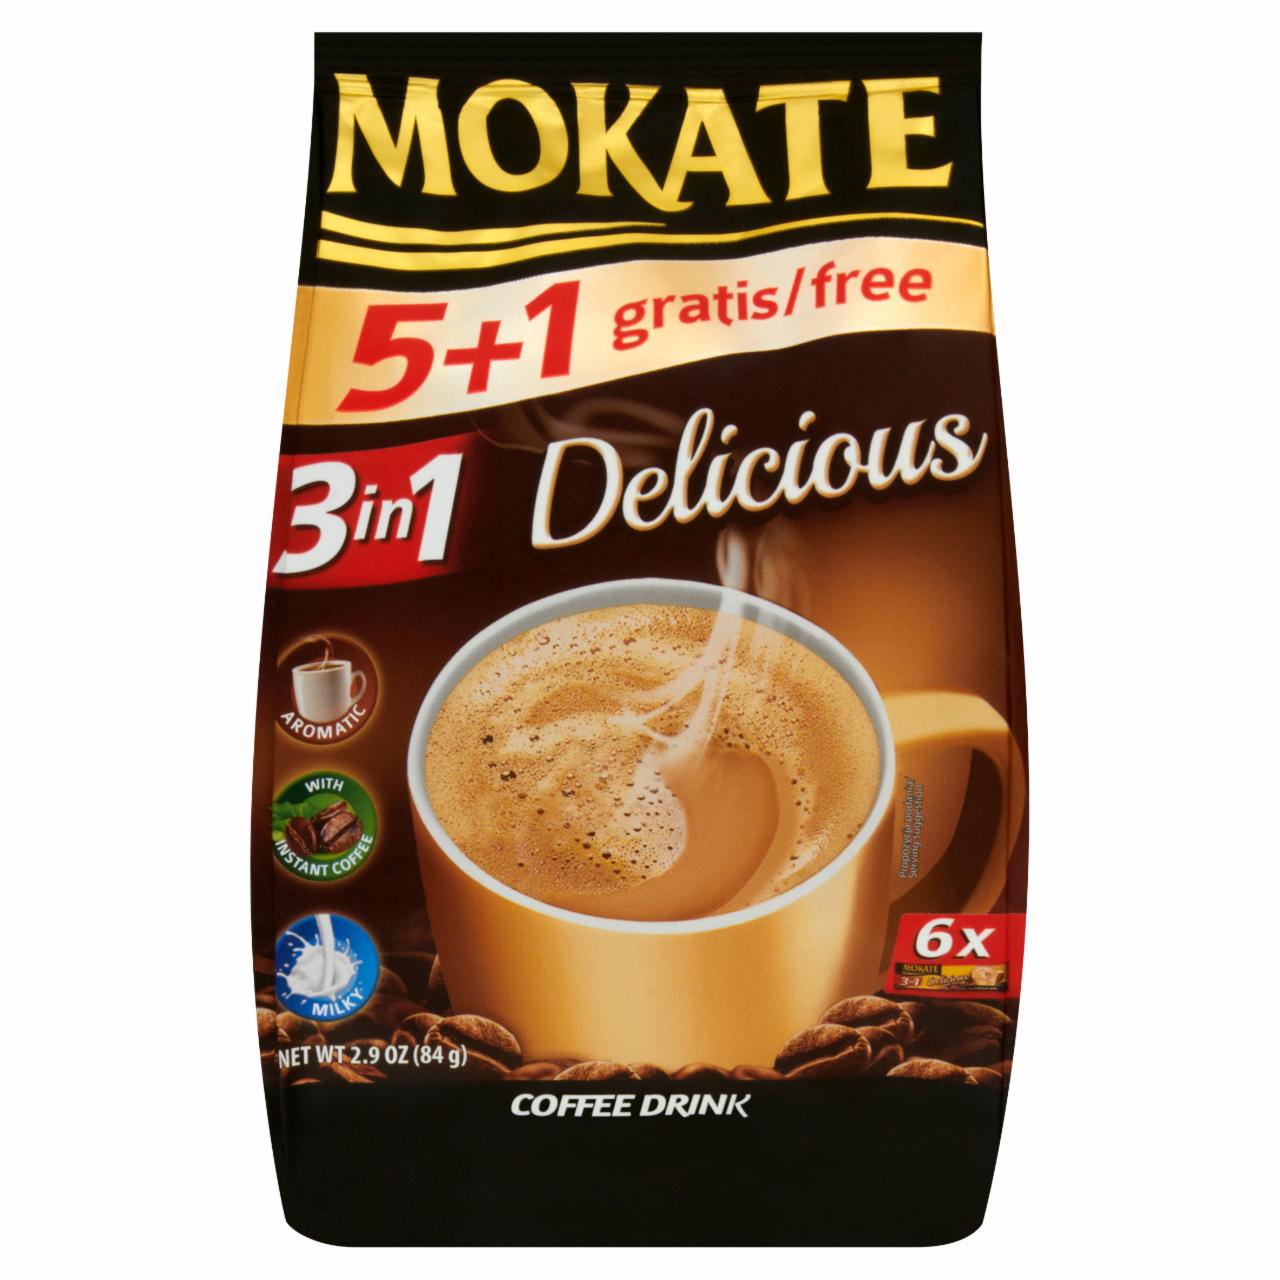 Zdjęcia - Mokate 3in1 Delicious Napój kawowy 6 x 14 g